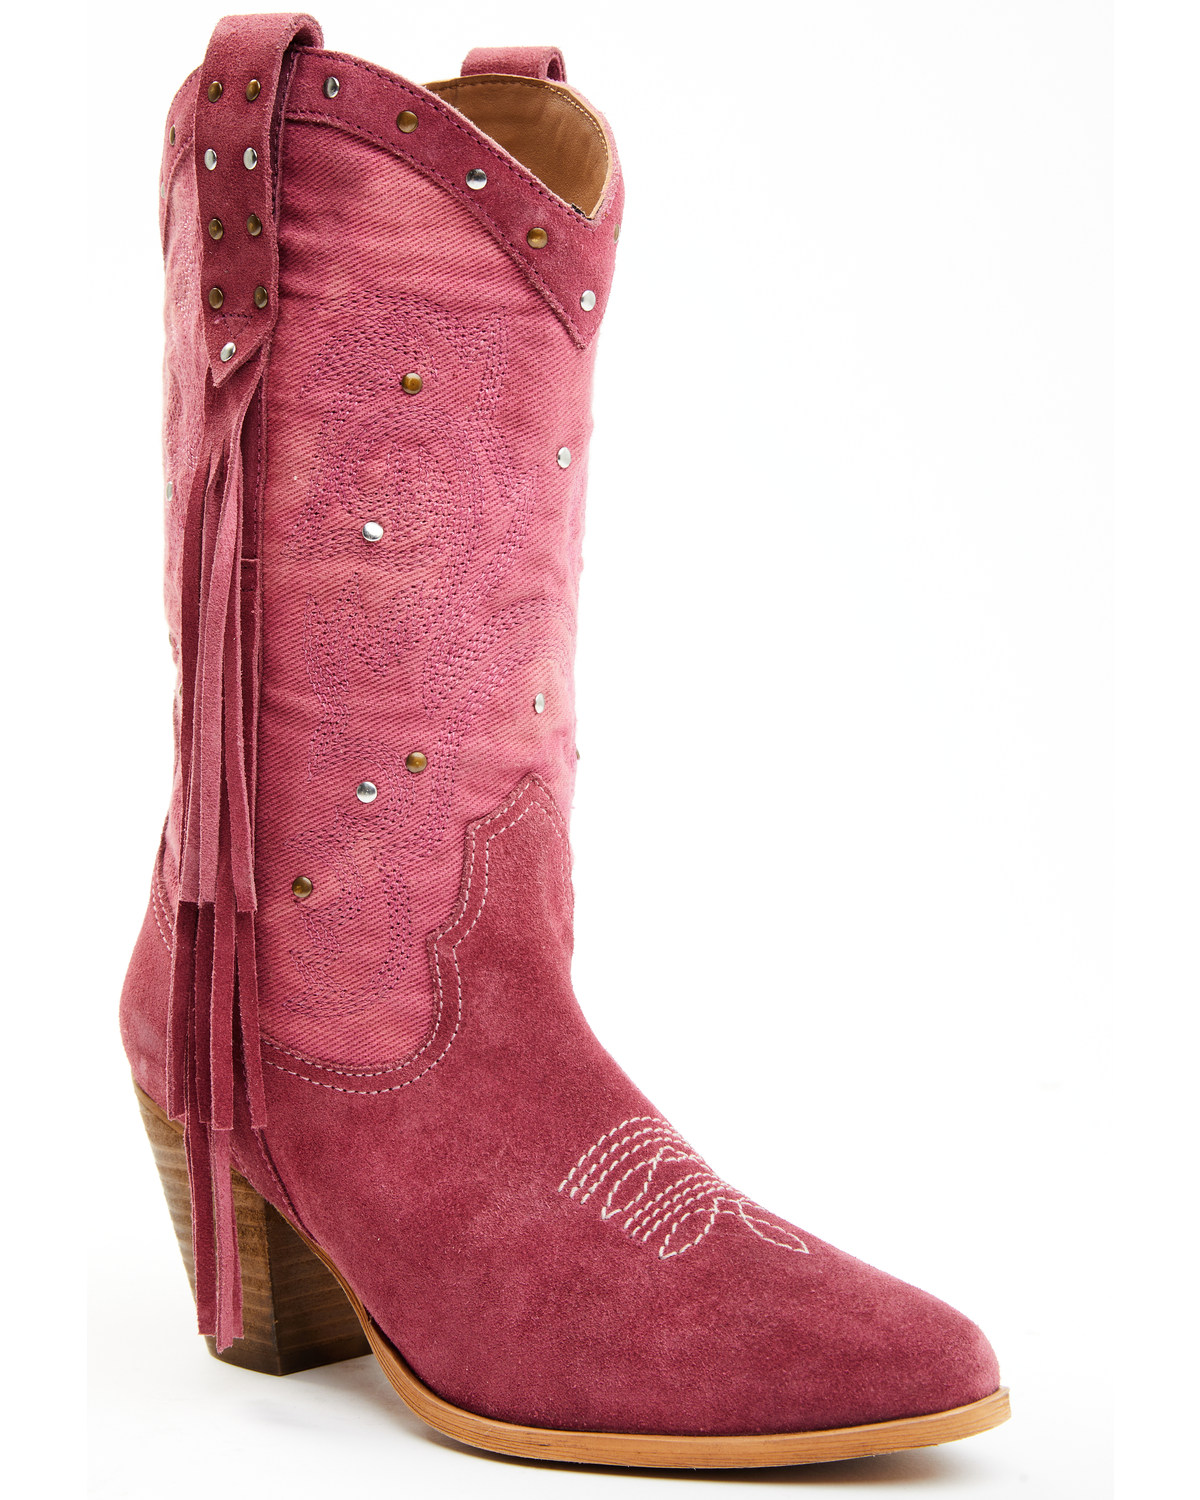 Idyllwind Women's Sashay Fringe Studded Leather Western Boots - Pointed Toe